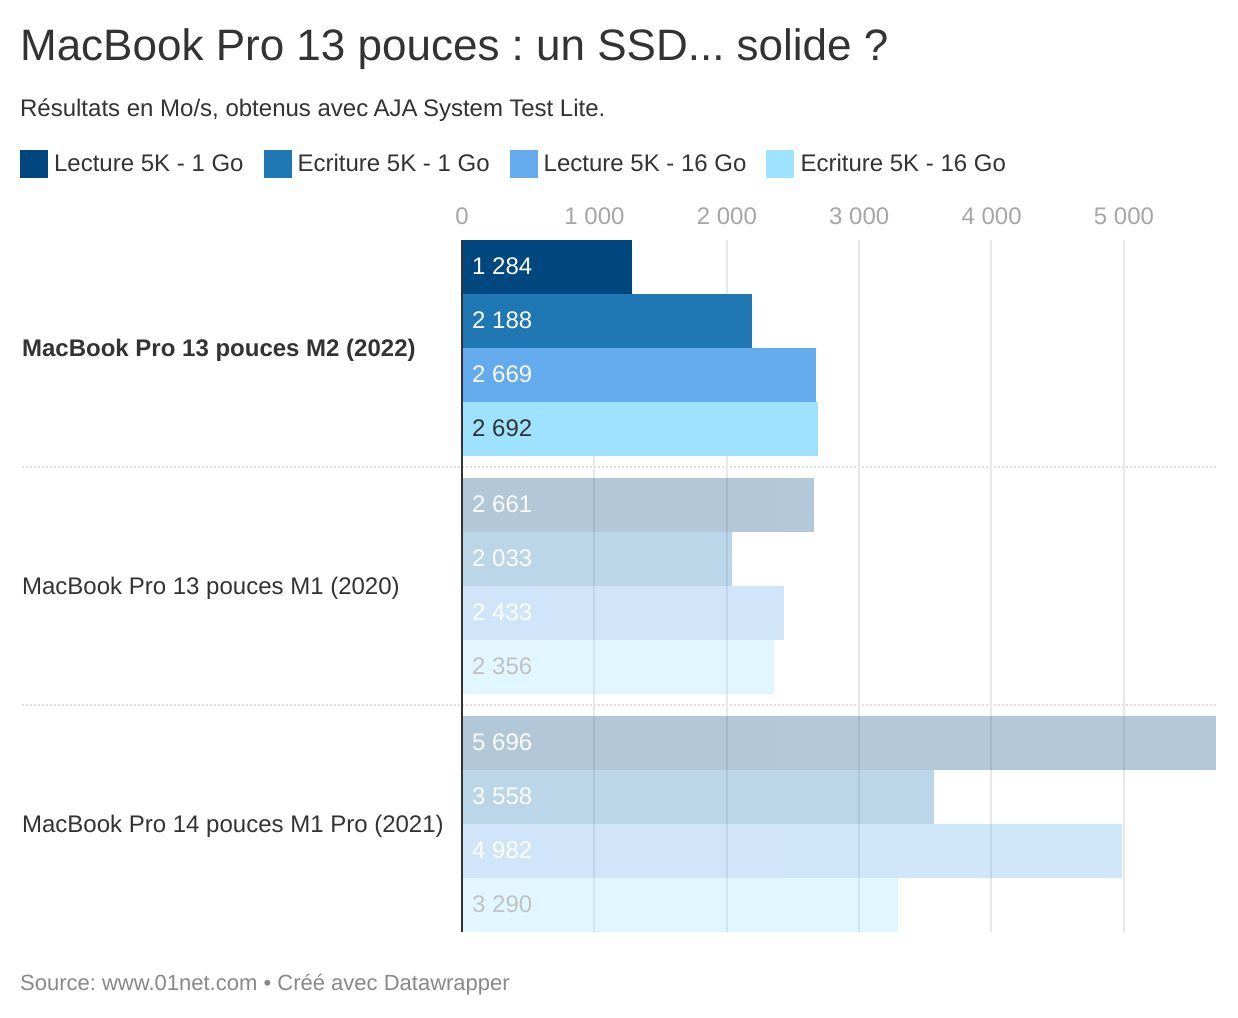 MacBook Pro 13 pouces : un SSD... solide ?